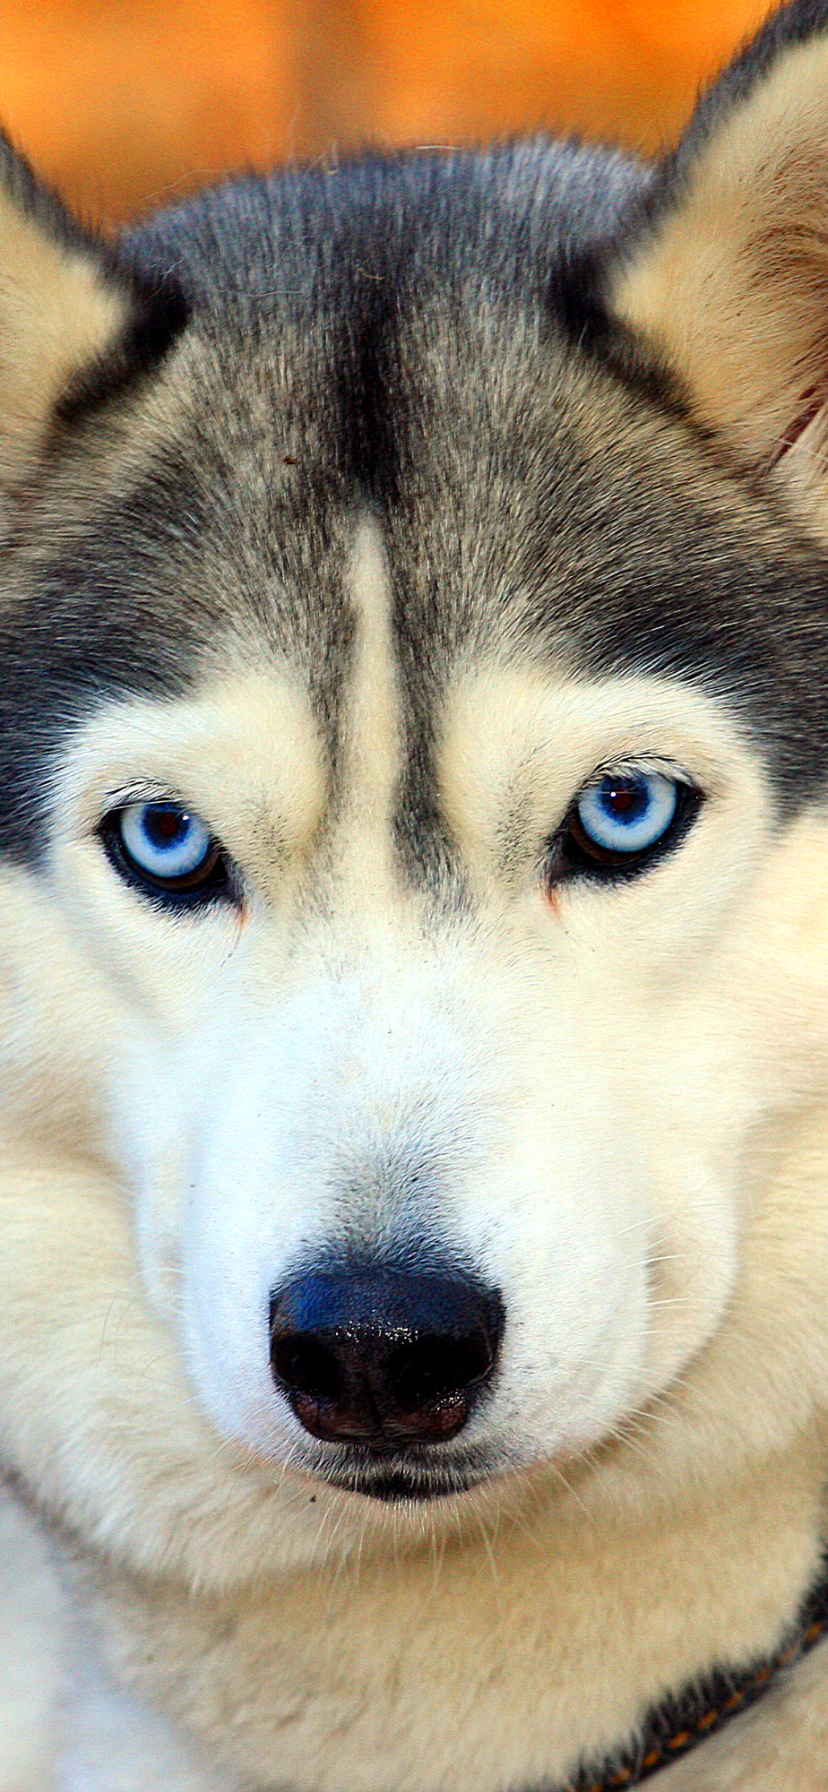 Descarga gratuita de fondo de pantalla para móvil de Animales, Perros, Perro, Husky Siberiano.